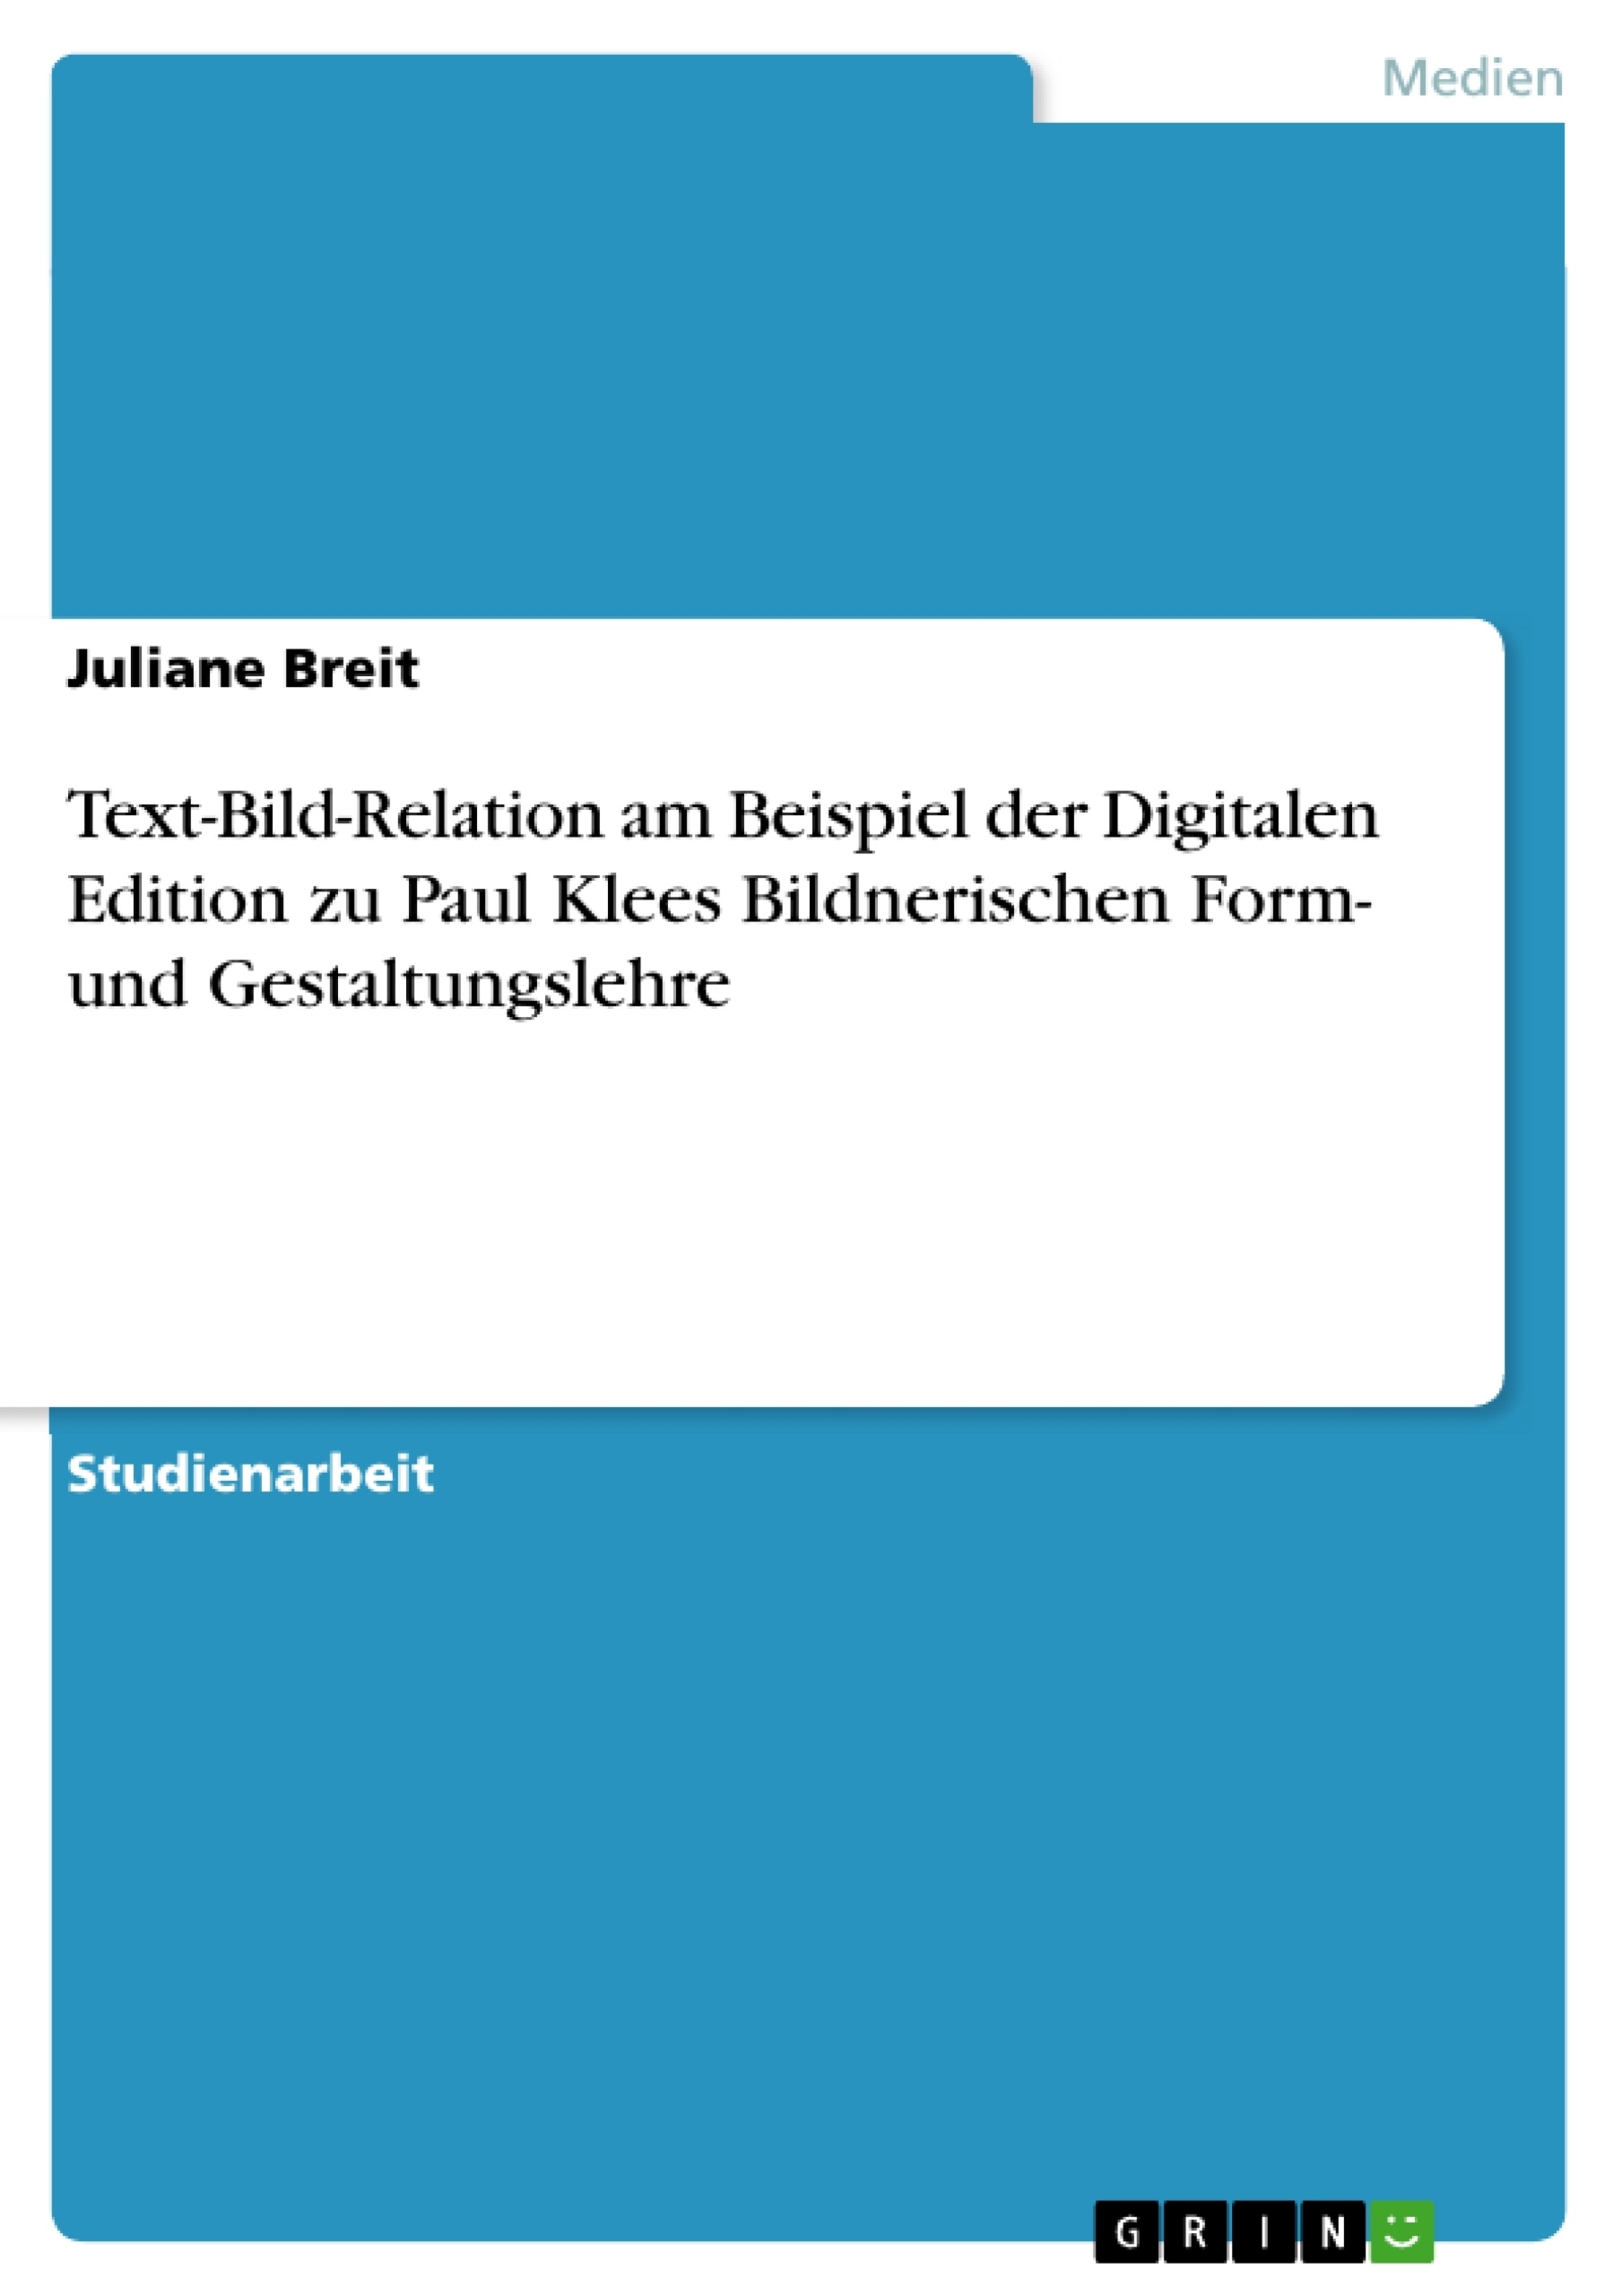 Título: Text-Bild-Relation am Beispiel der Digitalen Edition zu Paul Klees Bildnerischen Form- und Gestaltungslehre